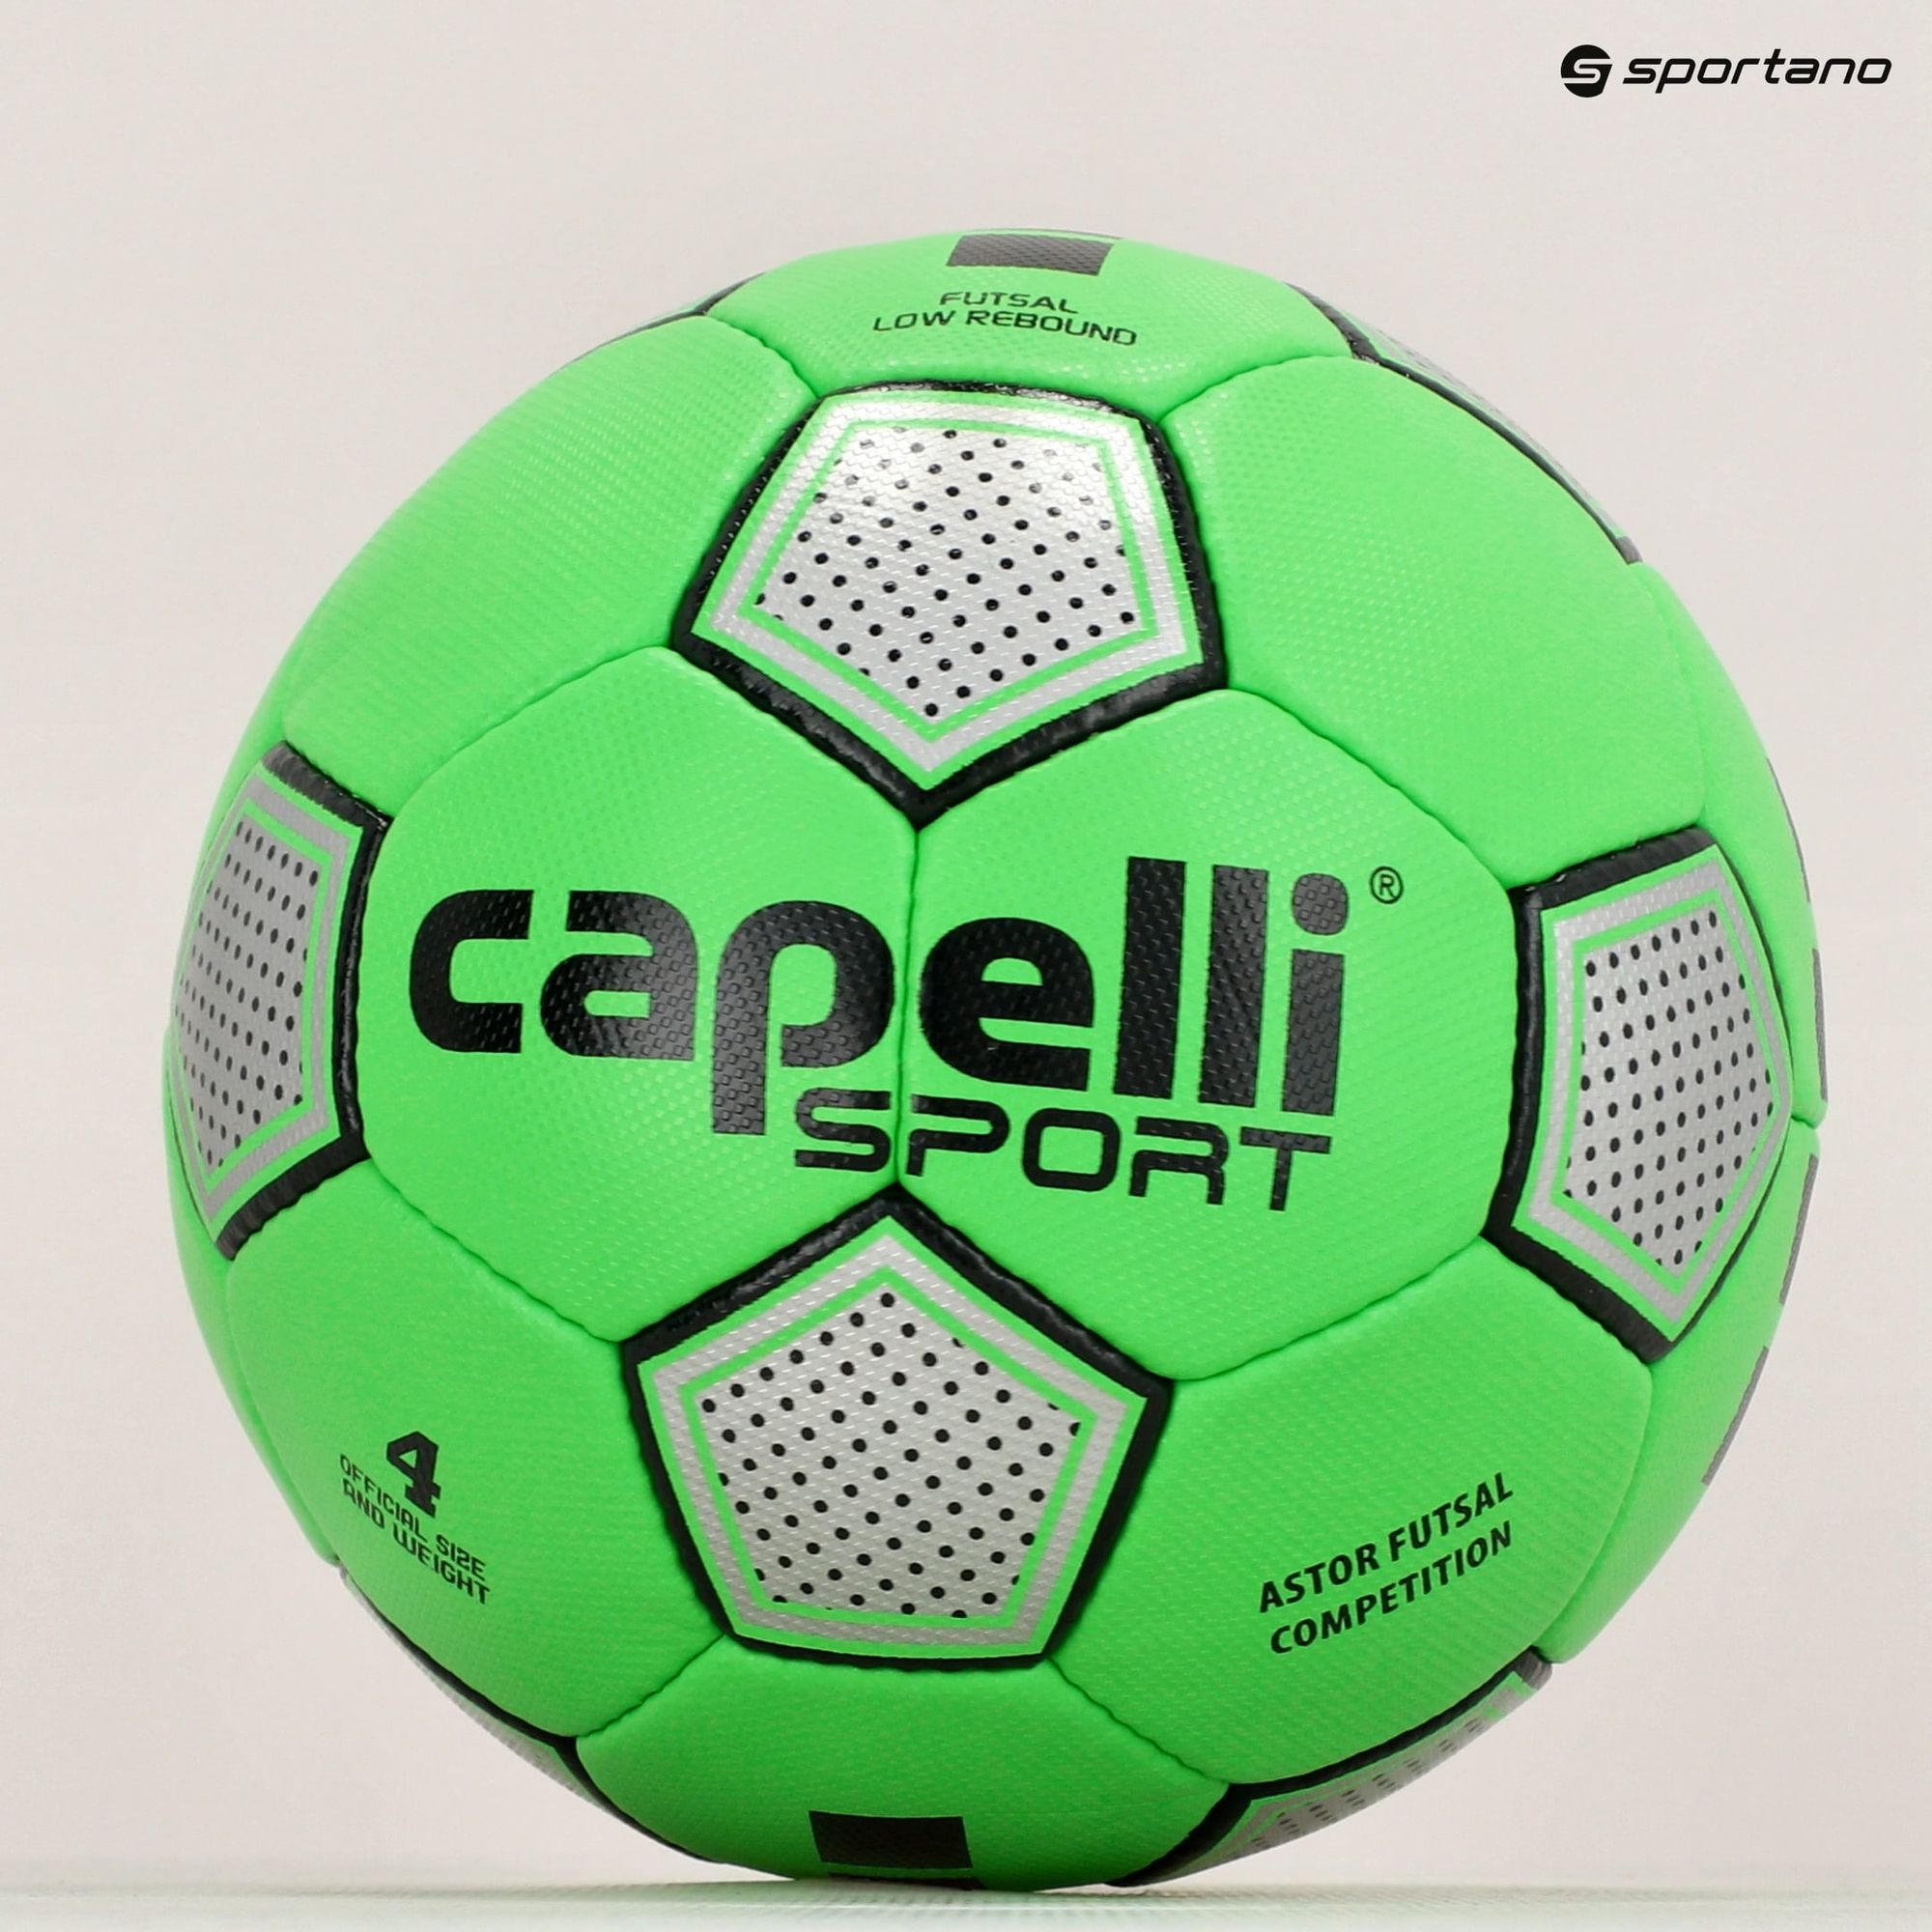 Piłka do piłki nożnej Capelli Astor Futsal Competition AGE-1212 rozmiar 4 zdjęcie nr 5